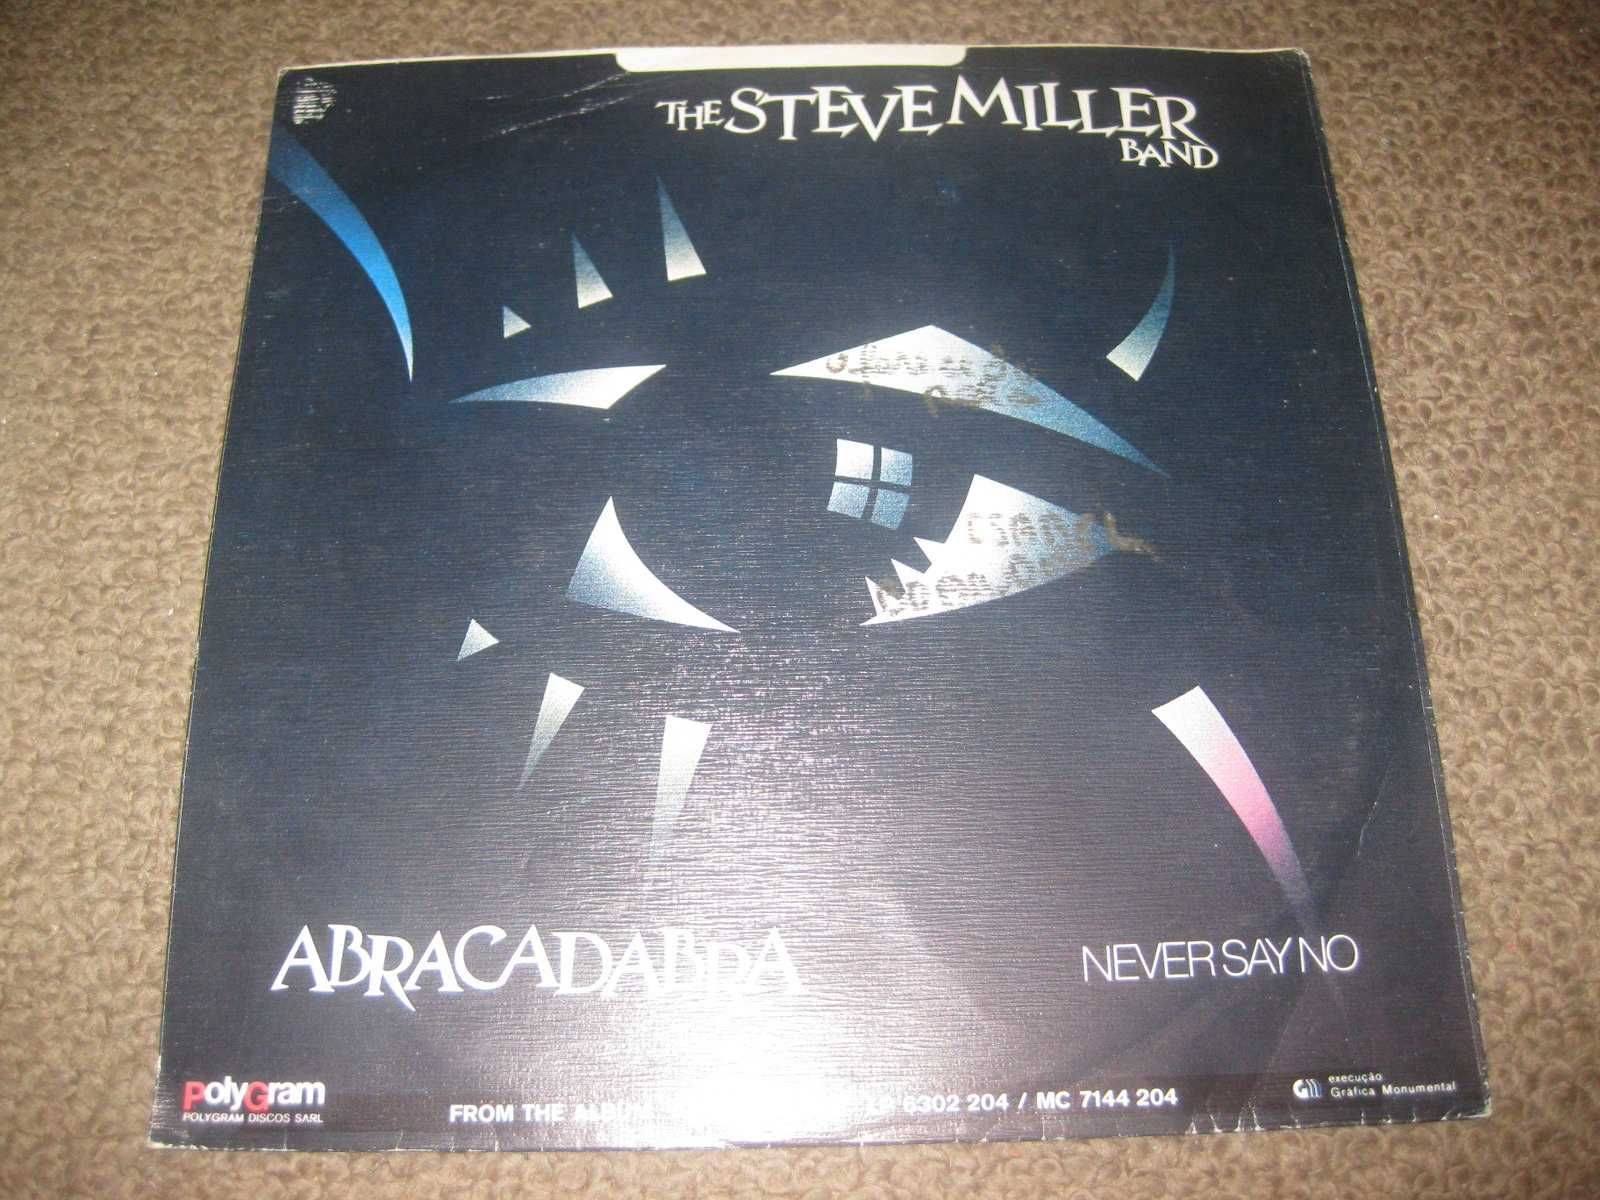 Vinil Single 45 rpm dos The Steve Miller Band "Abracadabra"